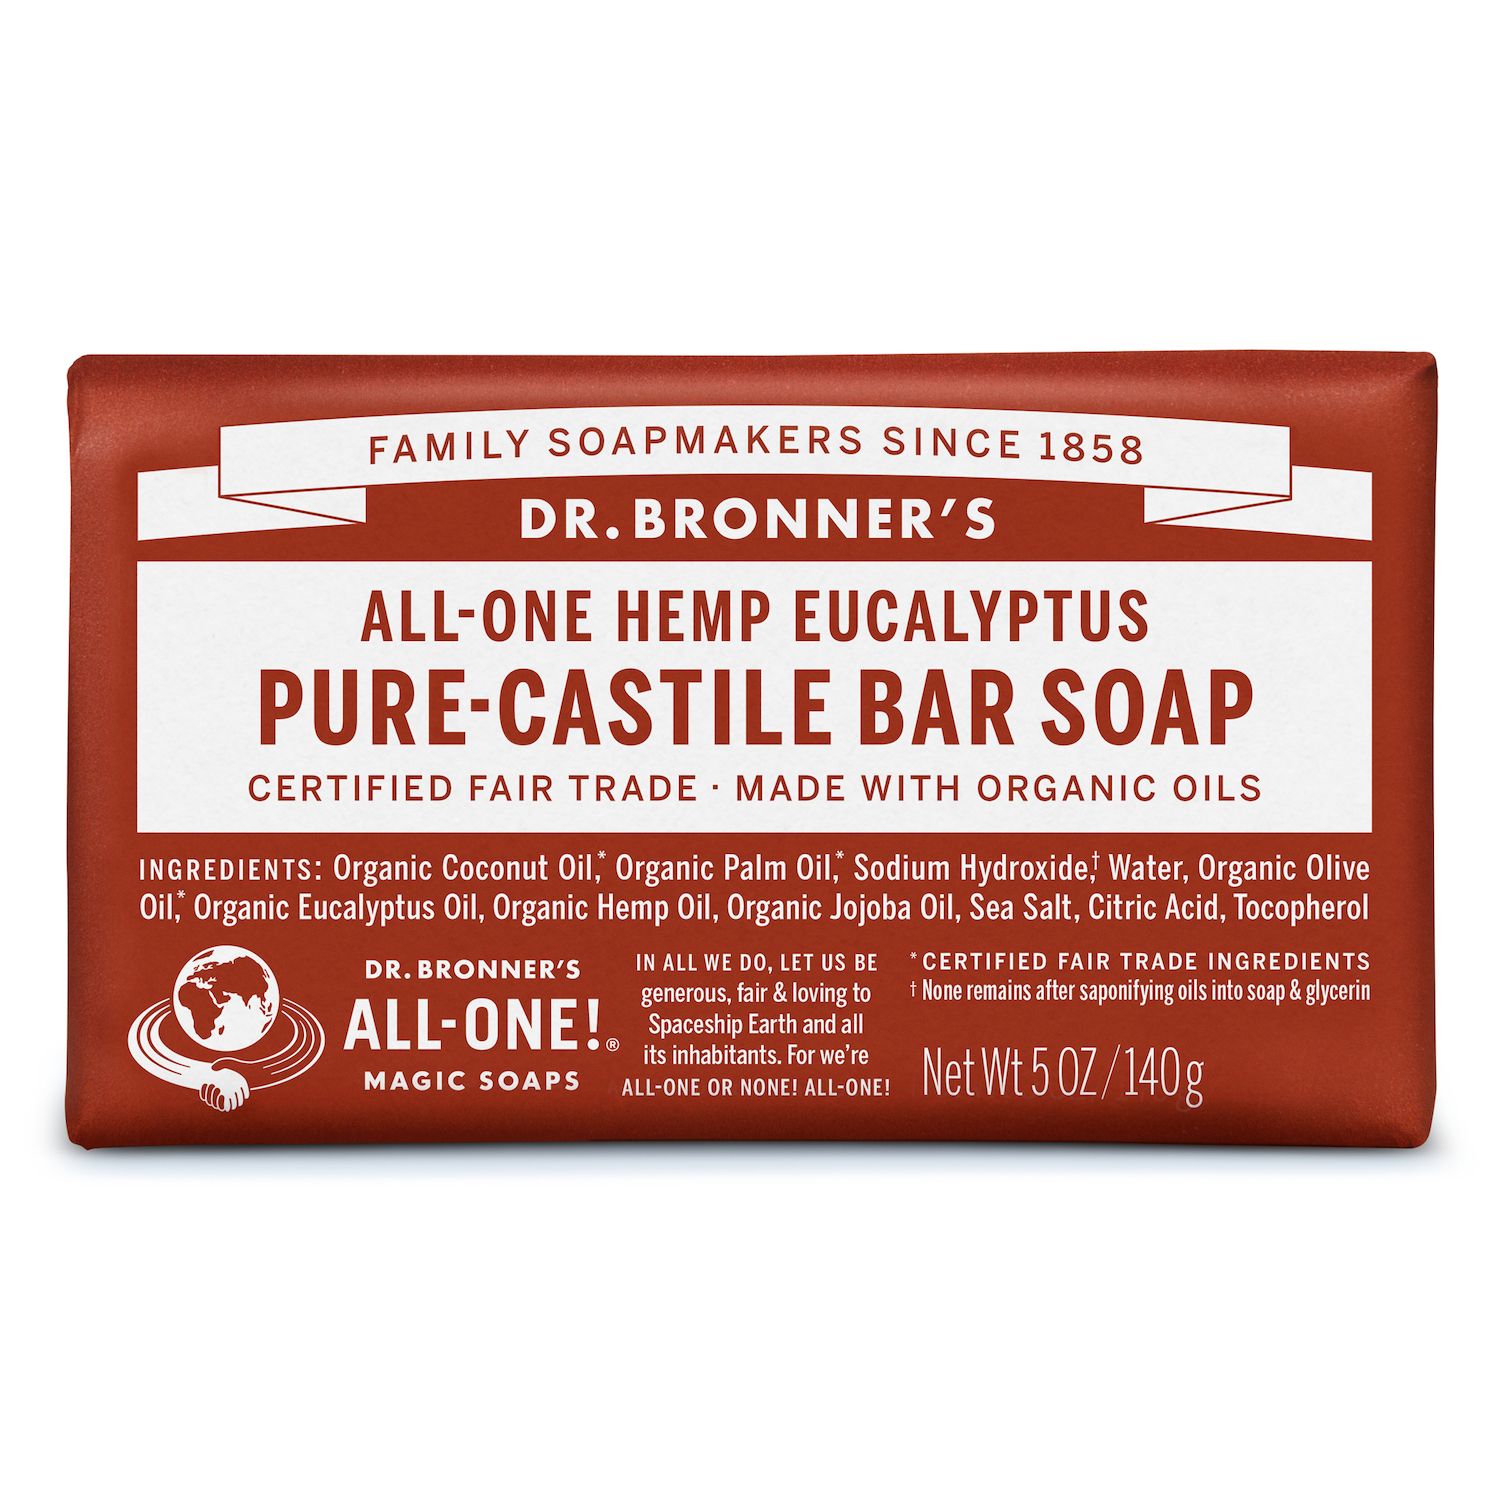 Image for Dr. Bronner’s Castille Bar Soap - Eucalyptus at Kohl's.